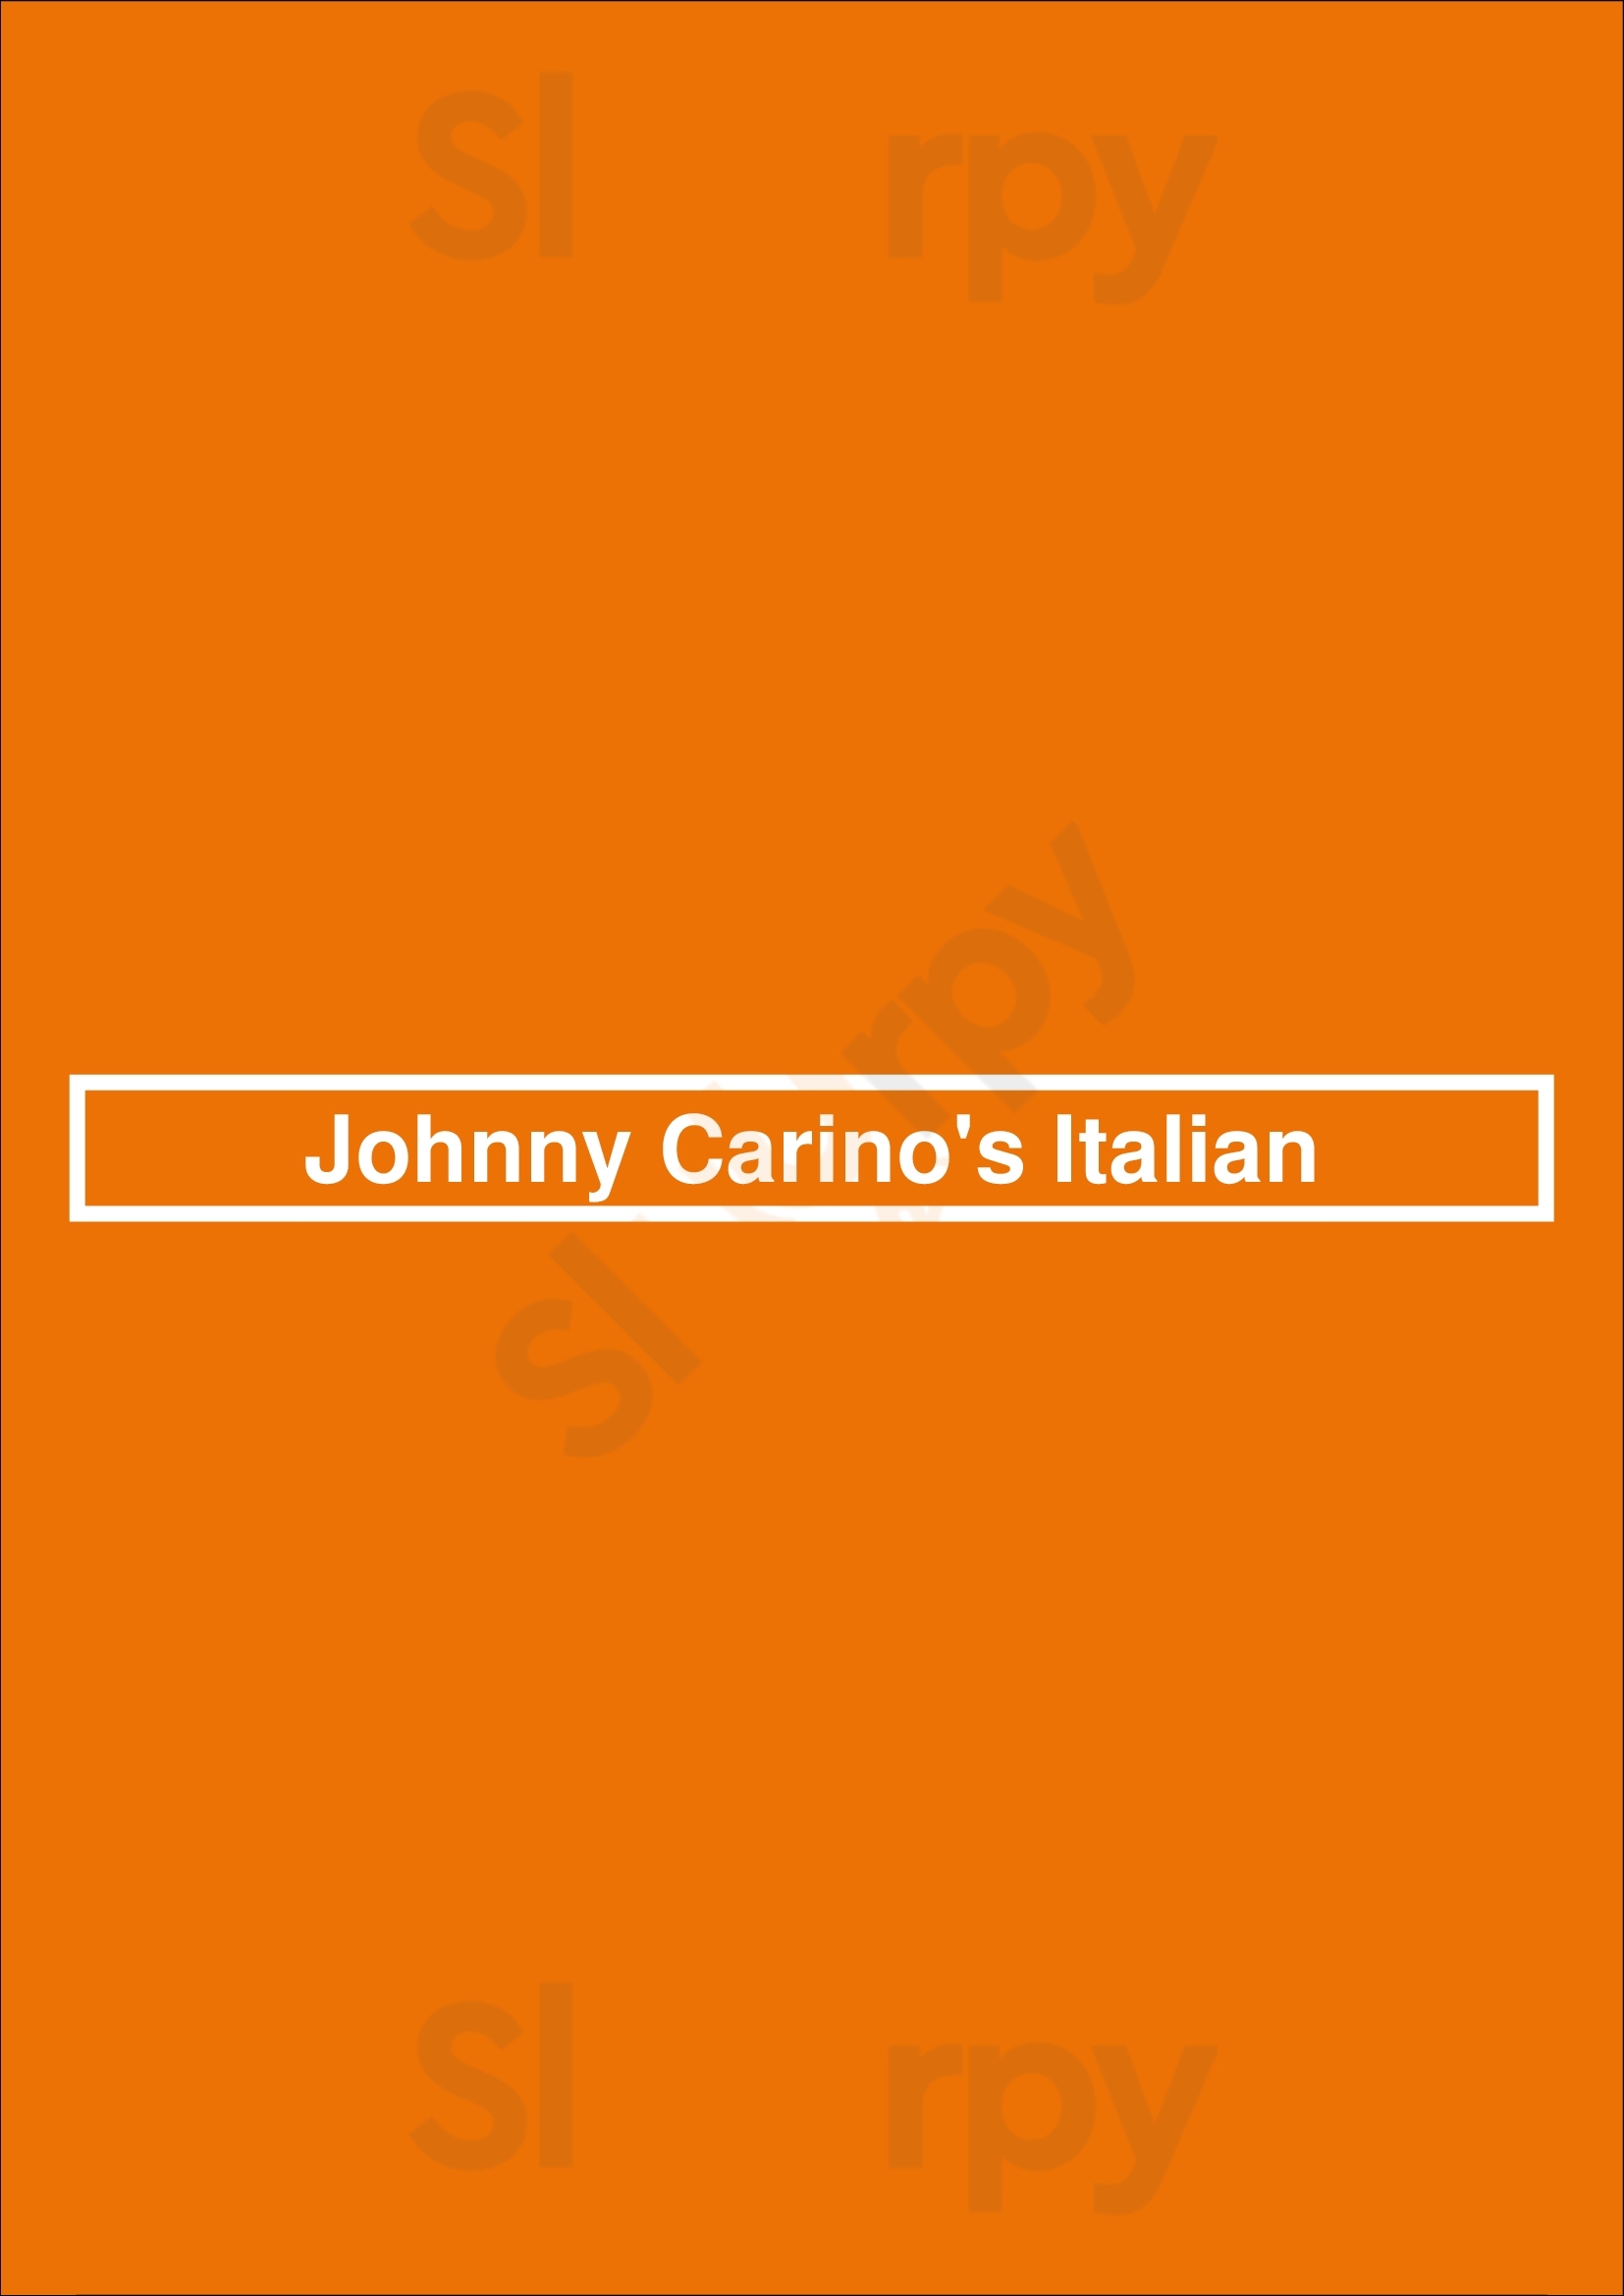 Johnny Carino's Italian Oklahoma City Menu - 1